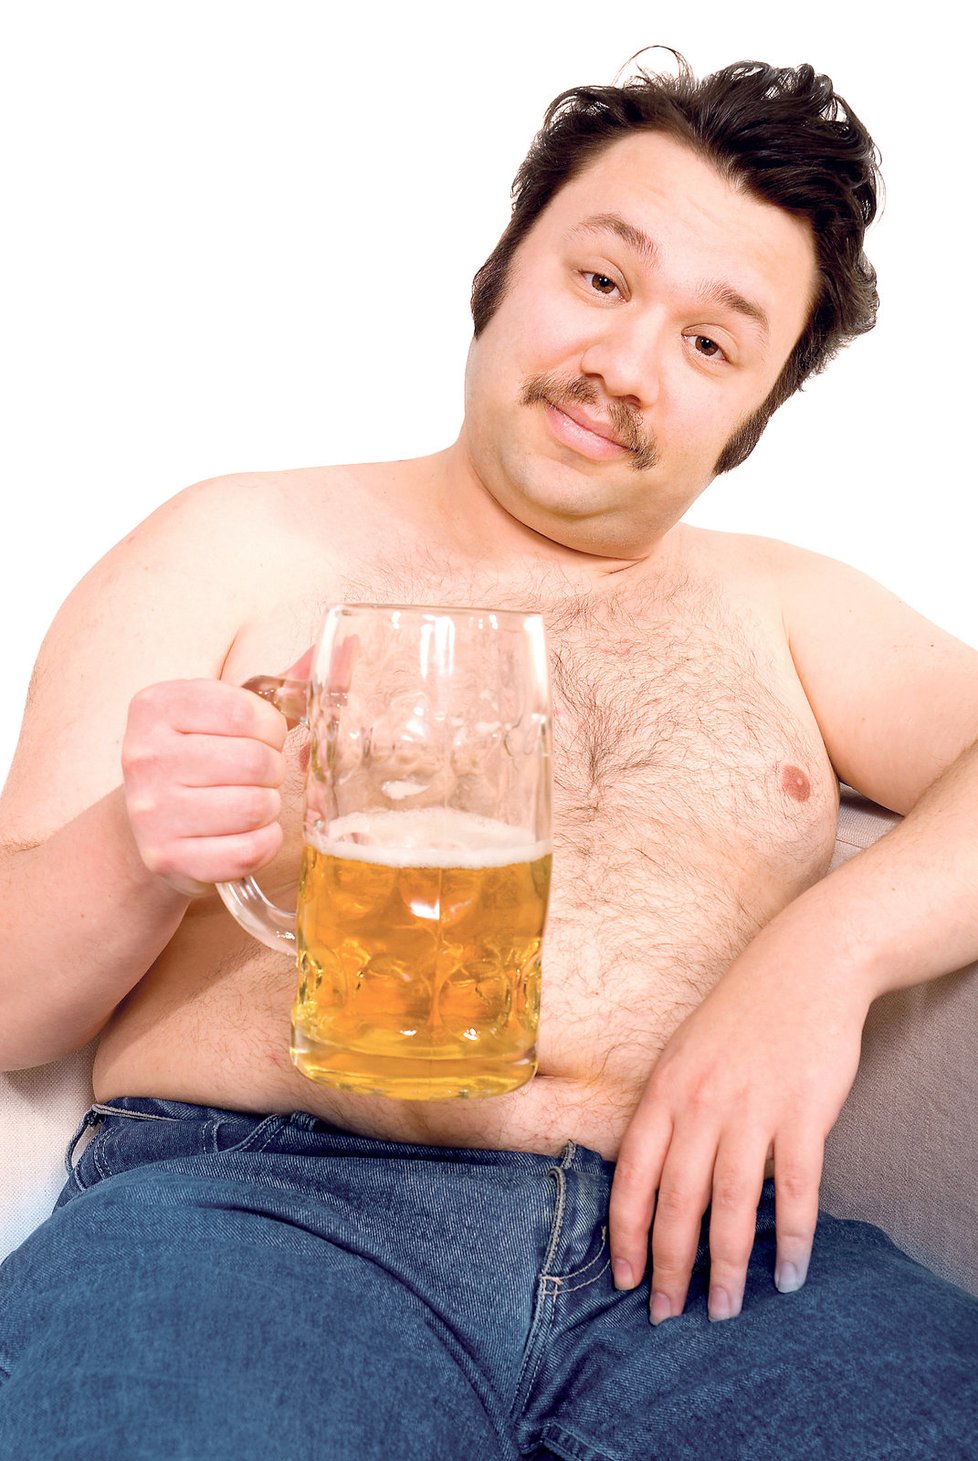 Pupek kvůli popíjení piva opravdu roste, ale stejně tak mohutní i ostatní partie těla